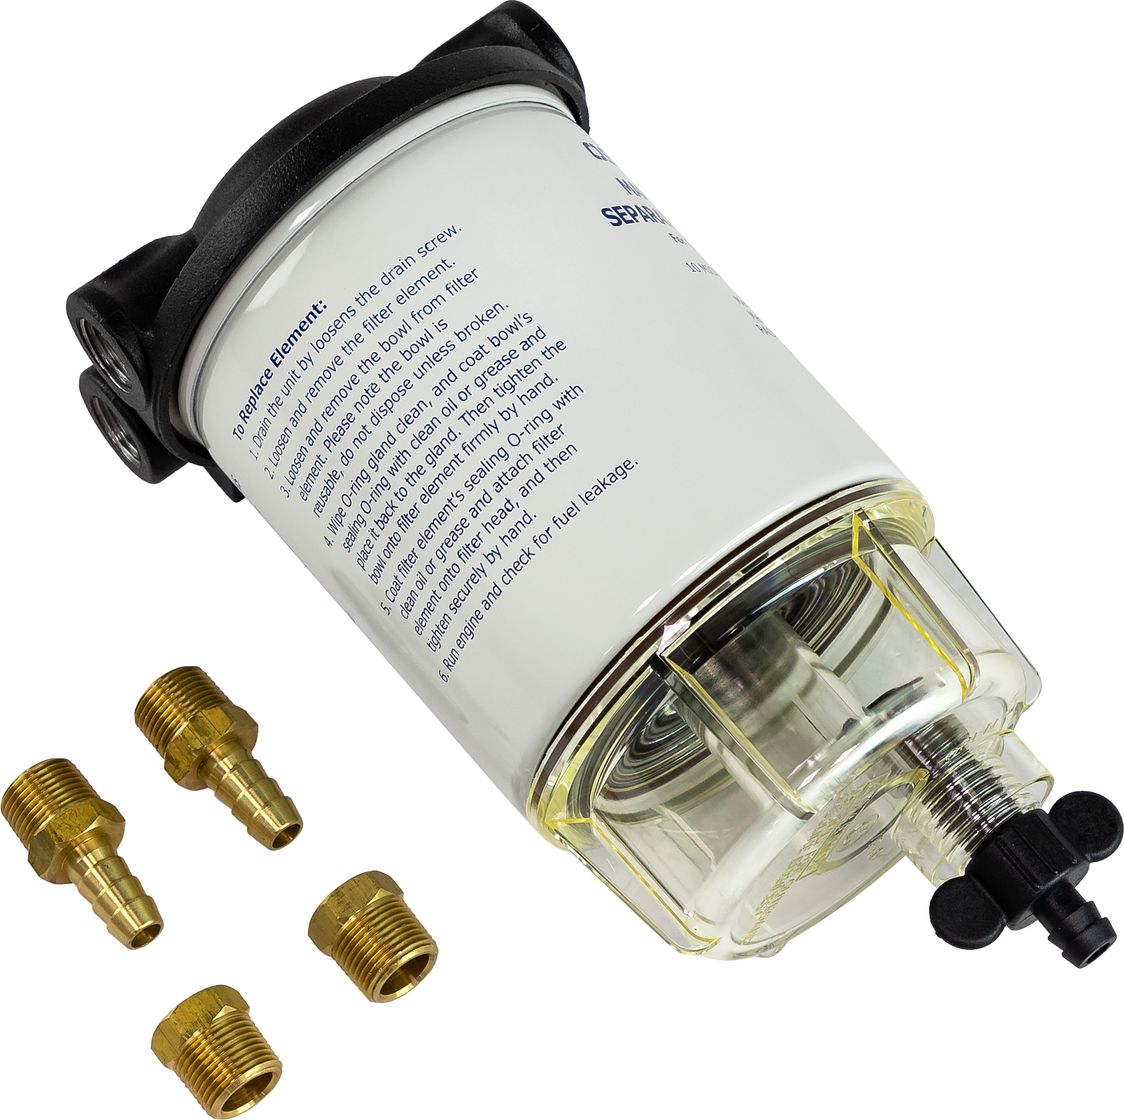 Фильтр топливный 10 мк с креплением и водосборником, Osculati 17-664-00 фильтр топливный 10 мк с креплением и водосборником малый c14573p